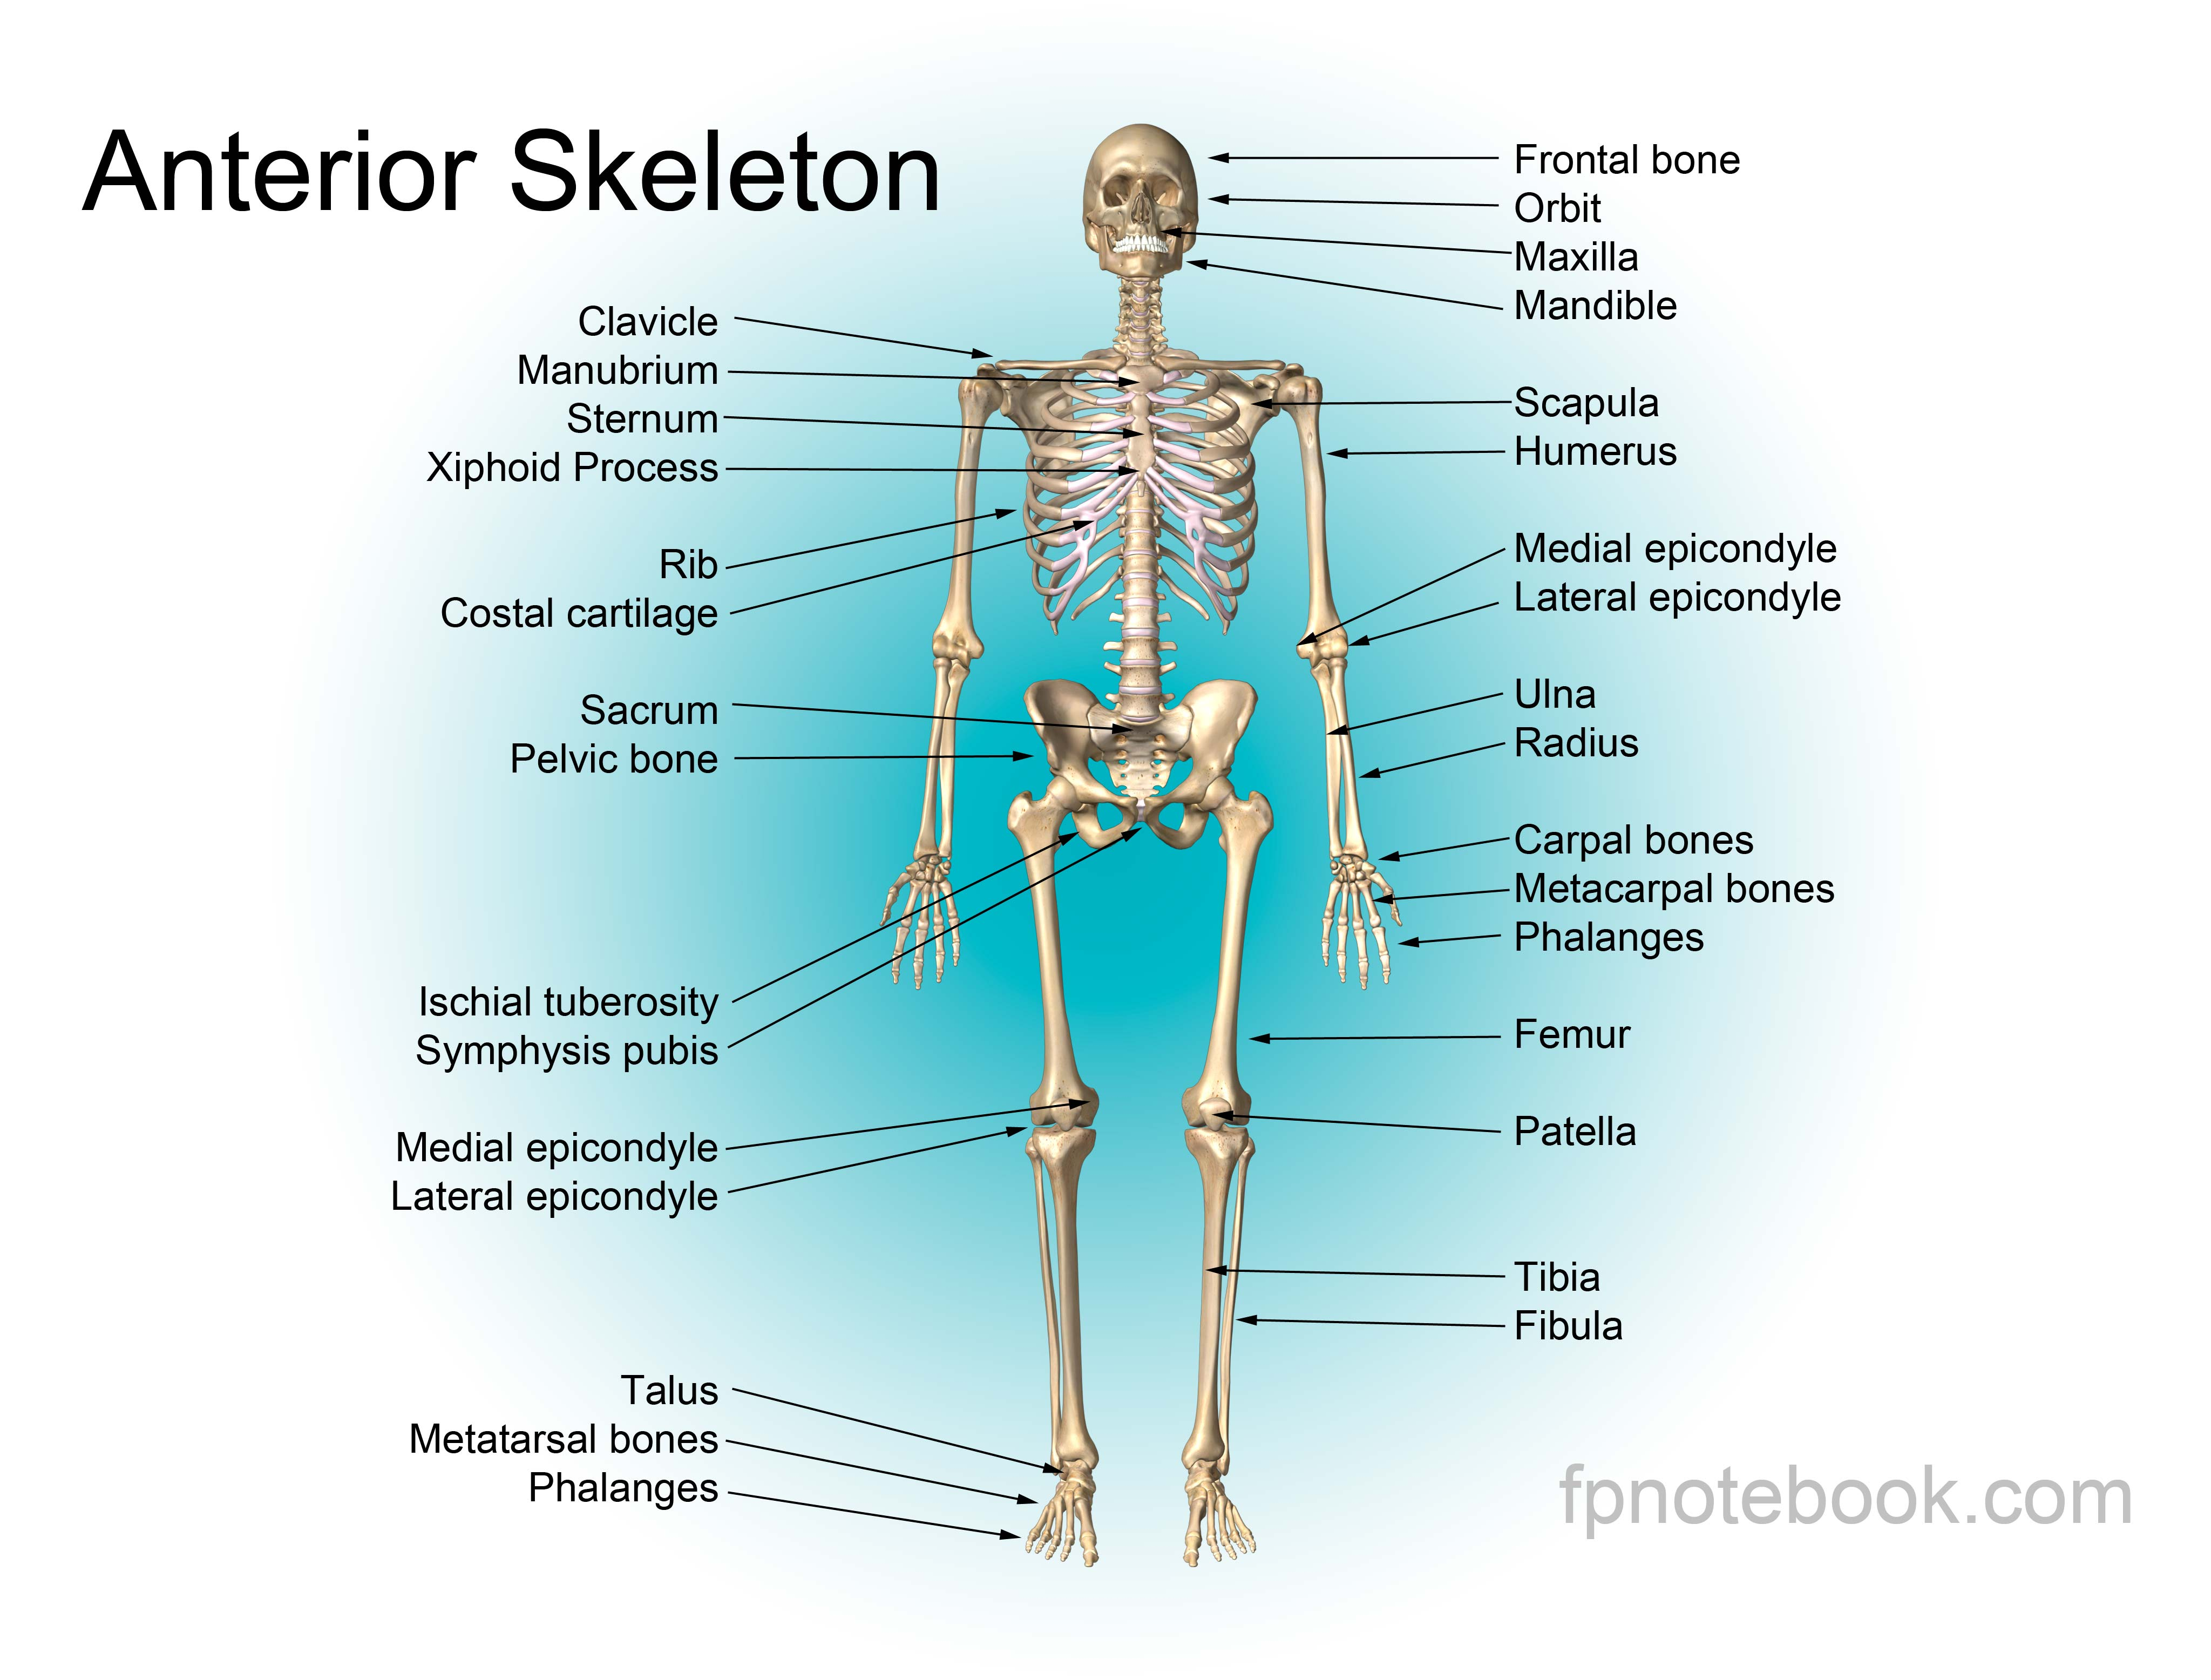 Атрофический латынь. Скелет человека анатомия кости на английском. Скелет туловища человека анатомия на латинском. Кости скелета на русском и на латыни. Кости туловища на латинском анатомия.